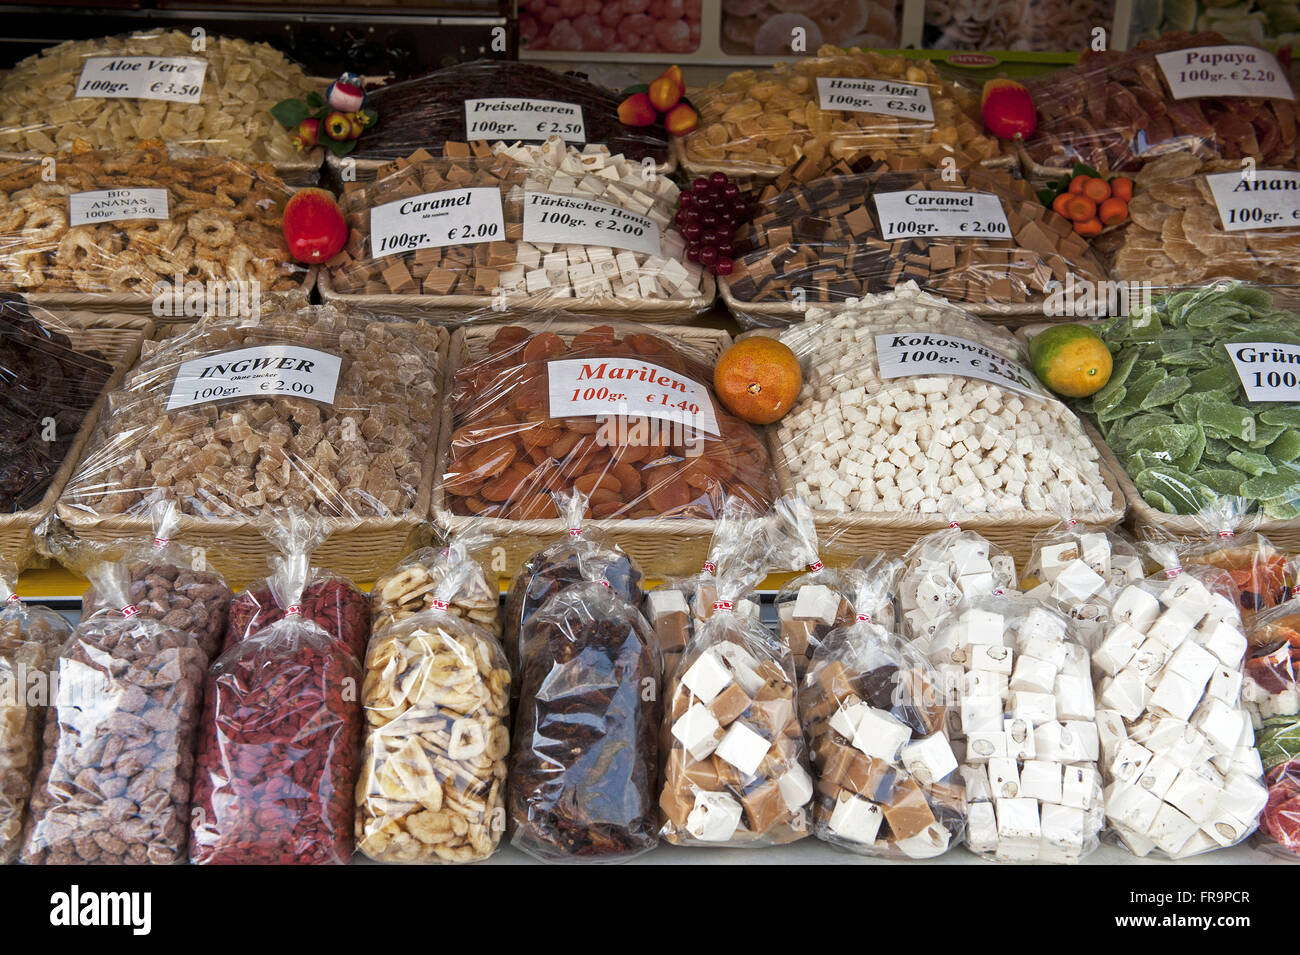 Banking candy in the Naschmarkt open-air market in Vienna - austria Stock Photo